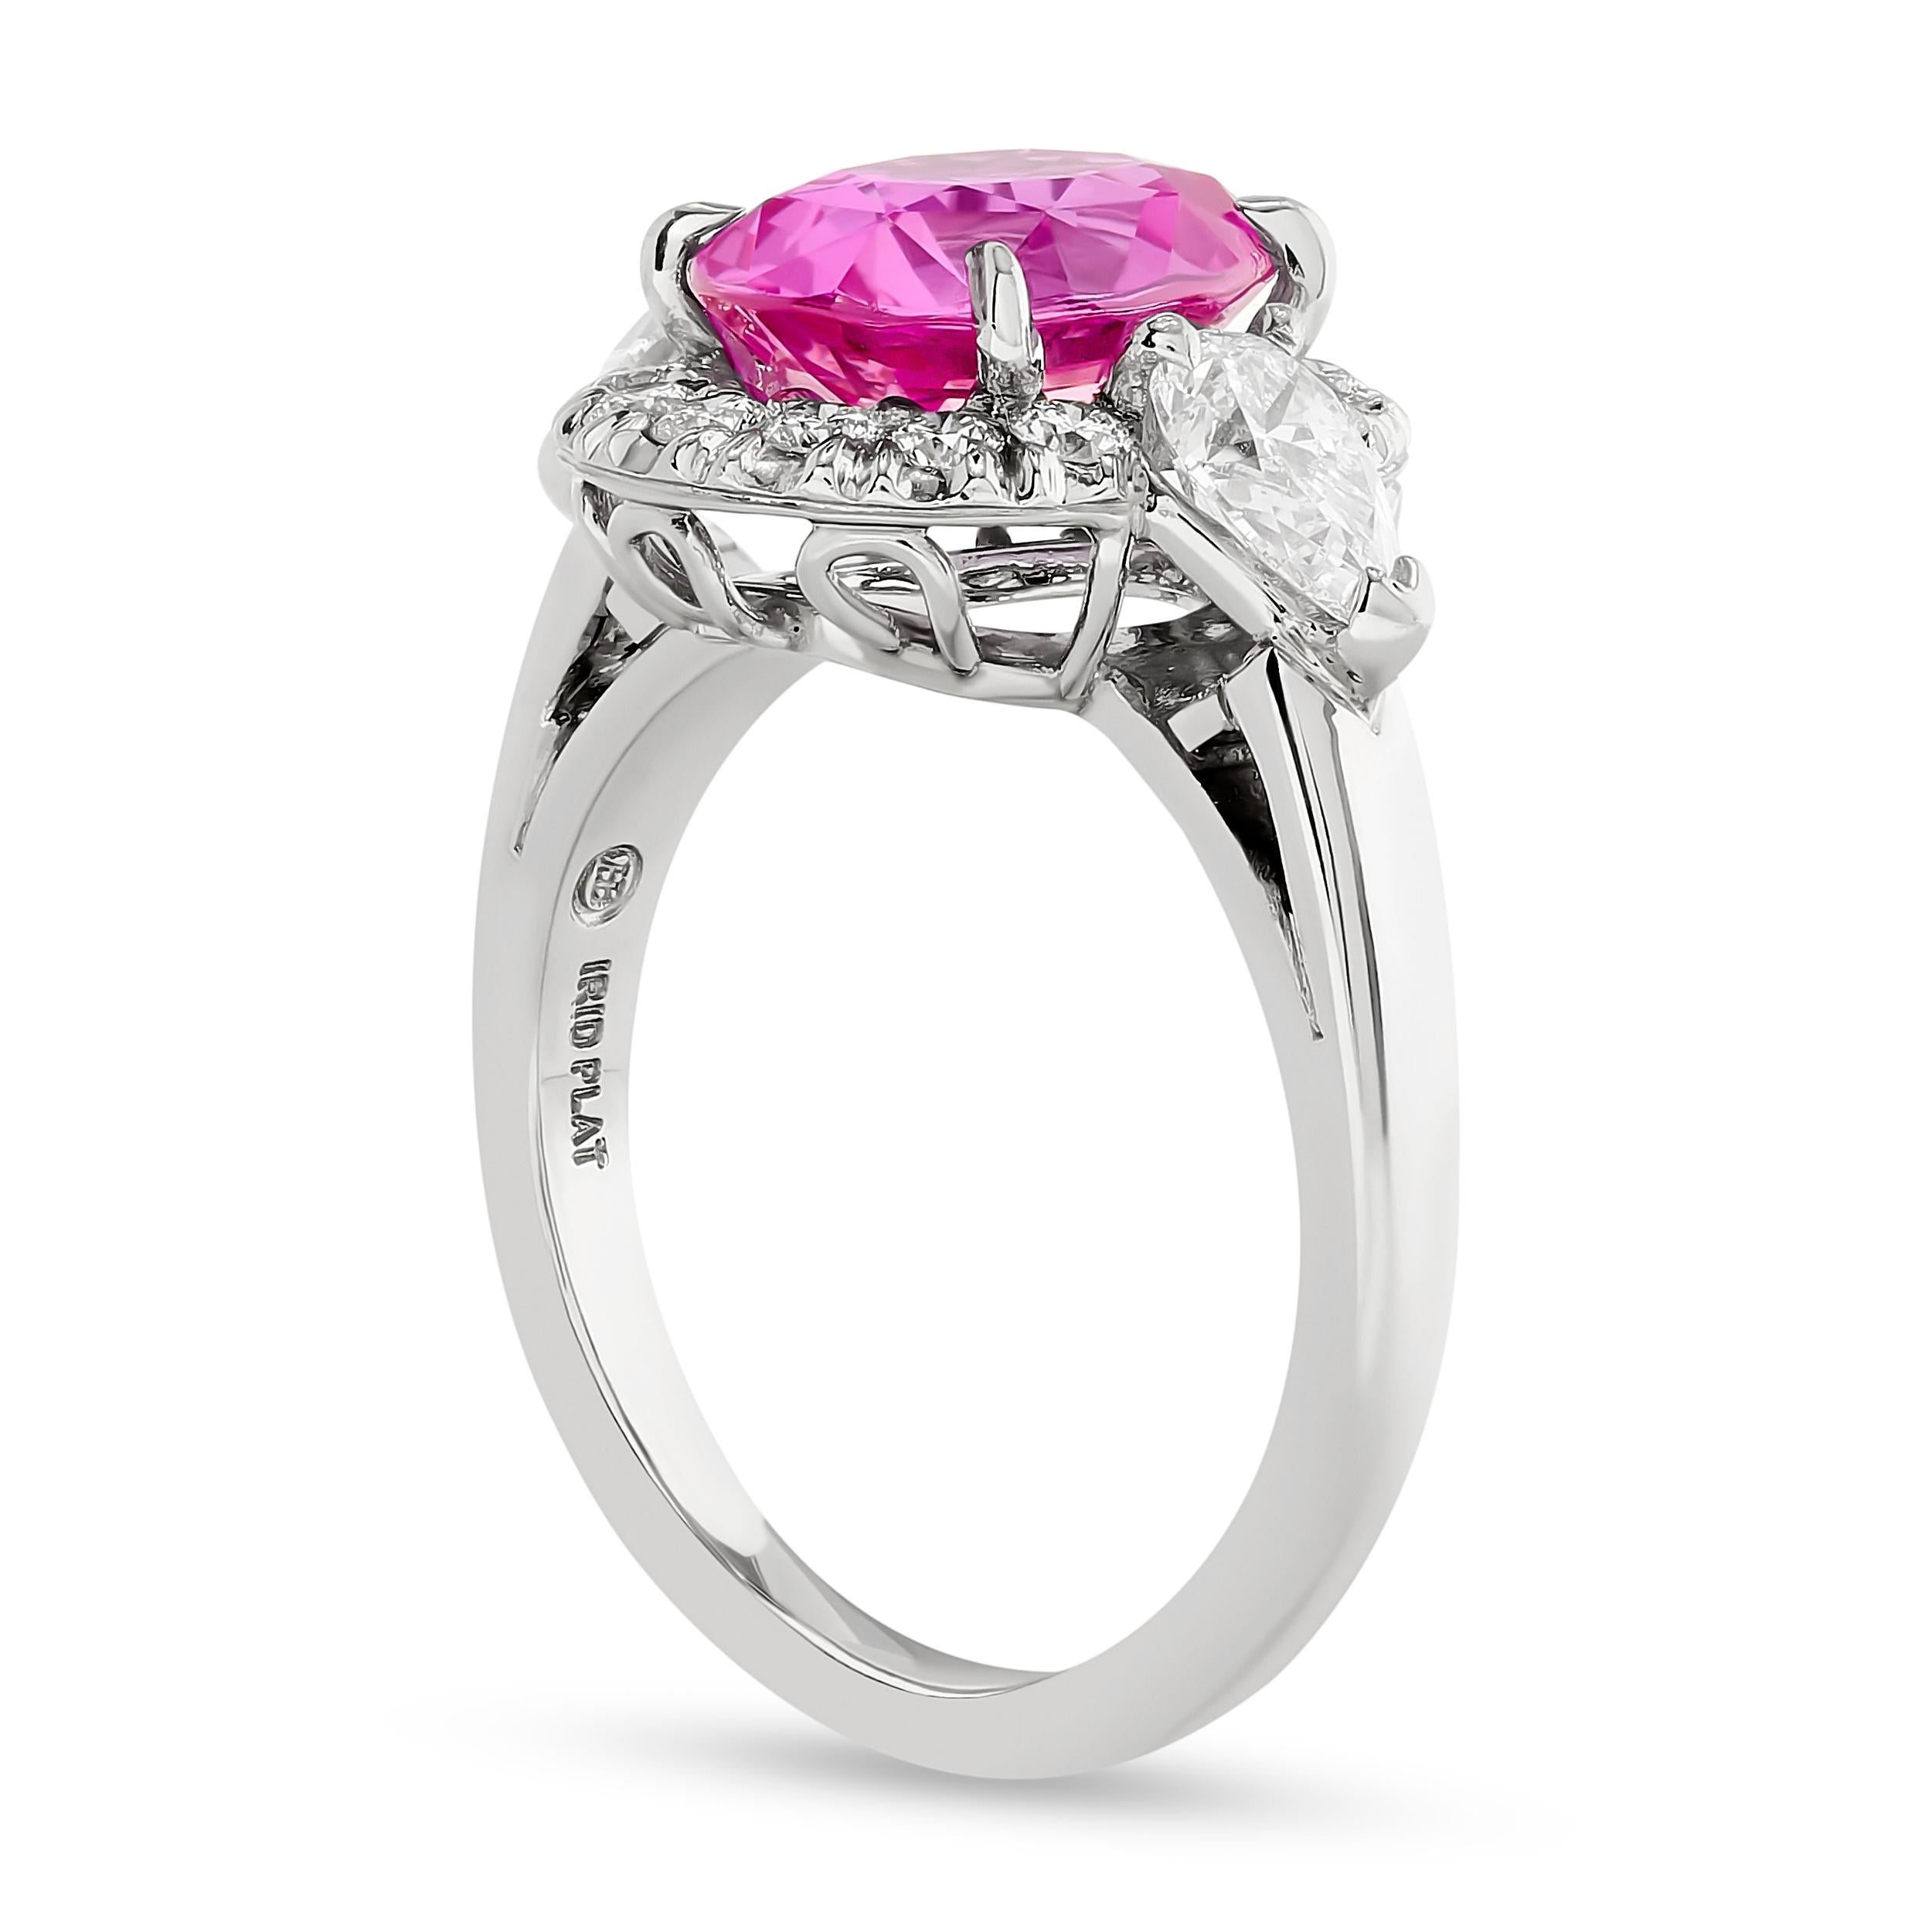 Cette superbe bague halo en saphir rose et diamants d'Oscar Heyman est un véritable chef-d'œuvre qui séduit par la beauté de son exécution.

Cette bague comporte un saphir rose ovale de 3,60 carats, 2 diamants en forme de poire et 14 diamants ronds